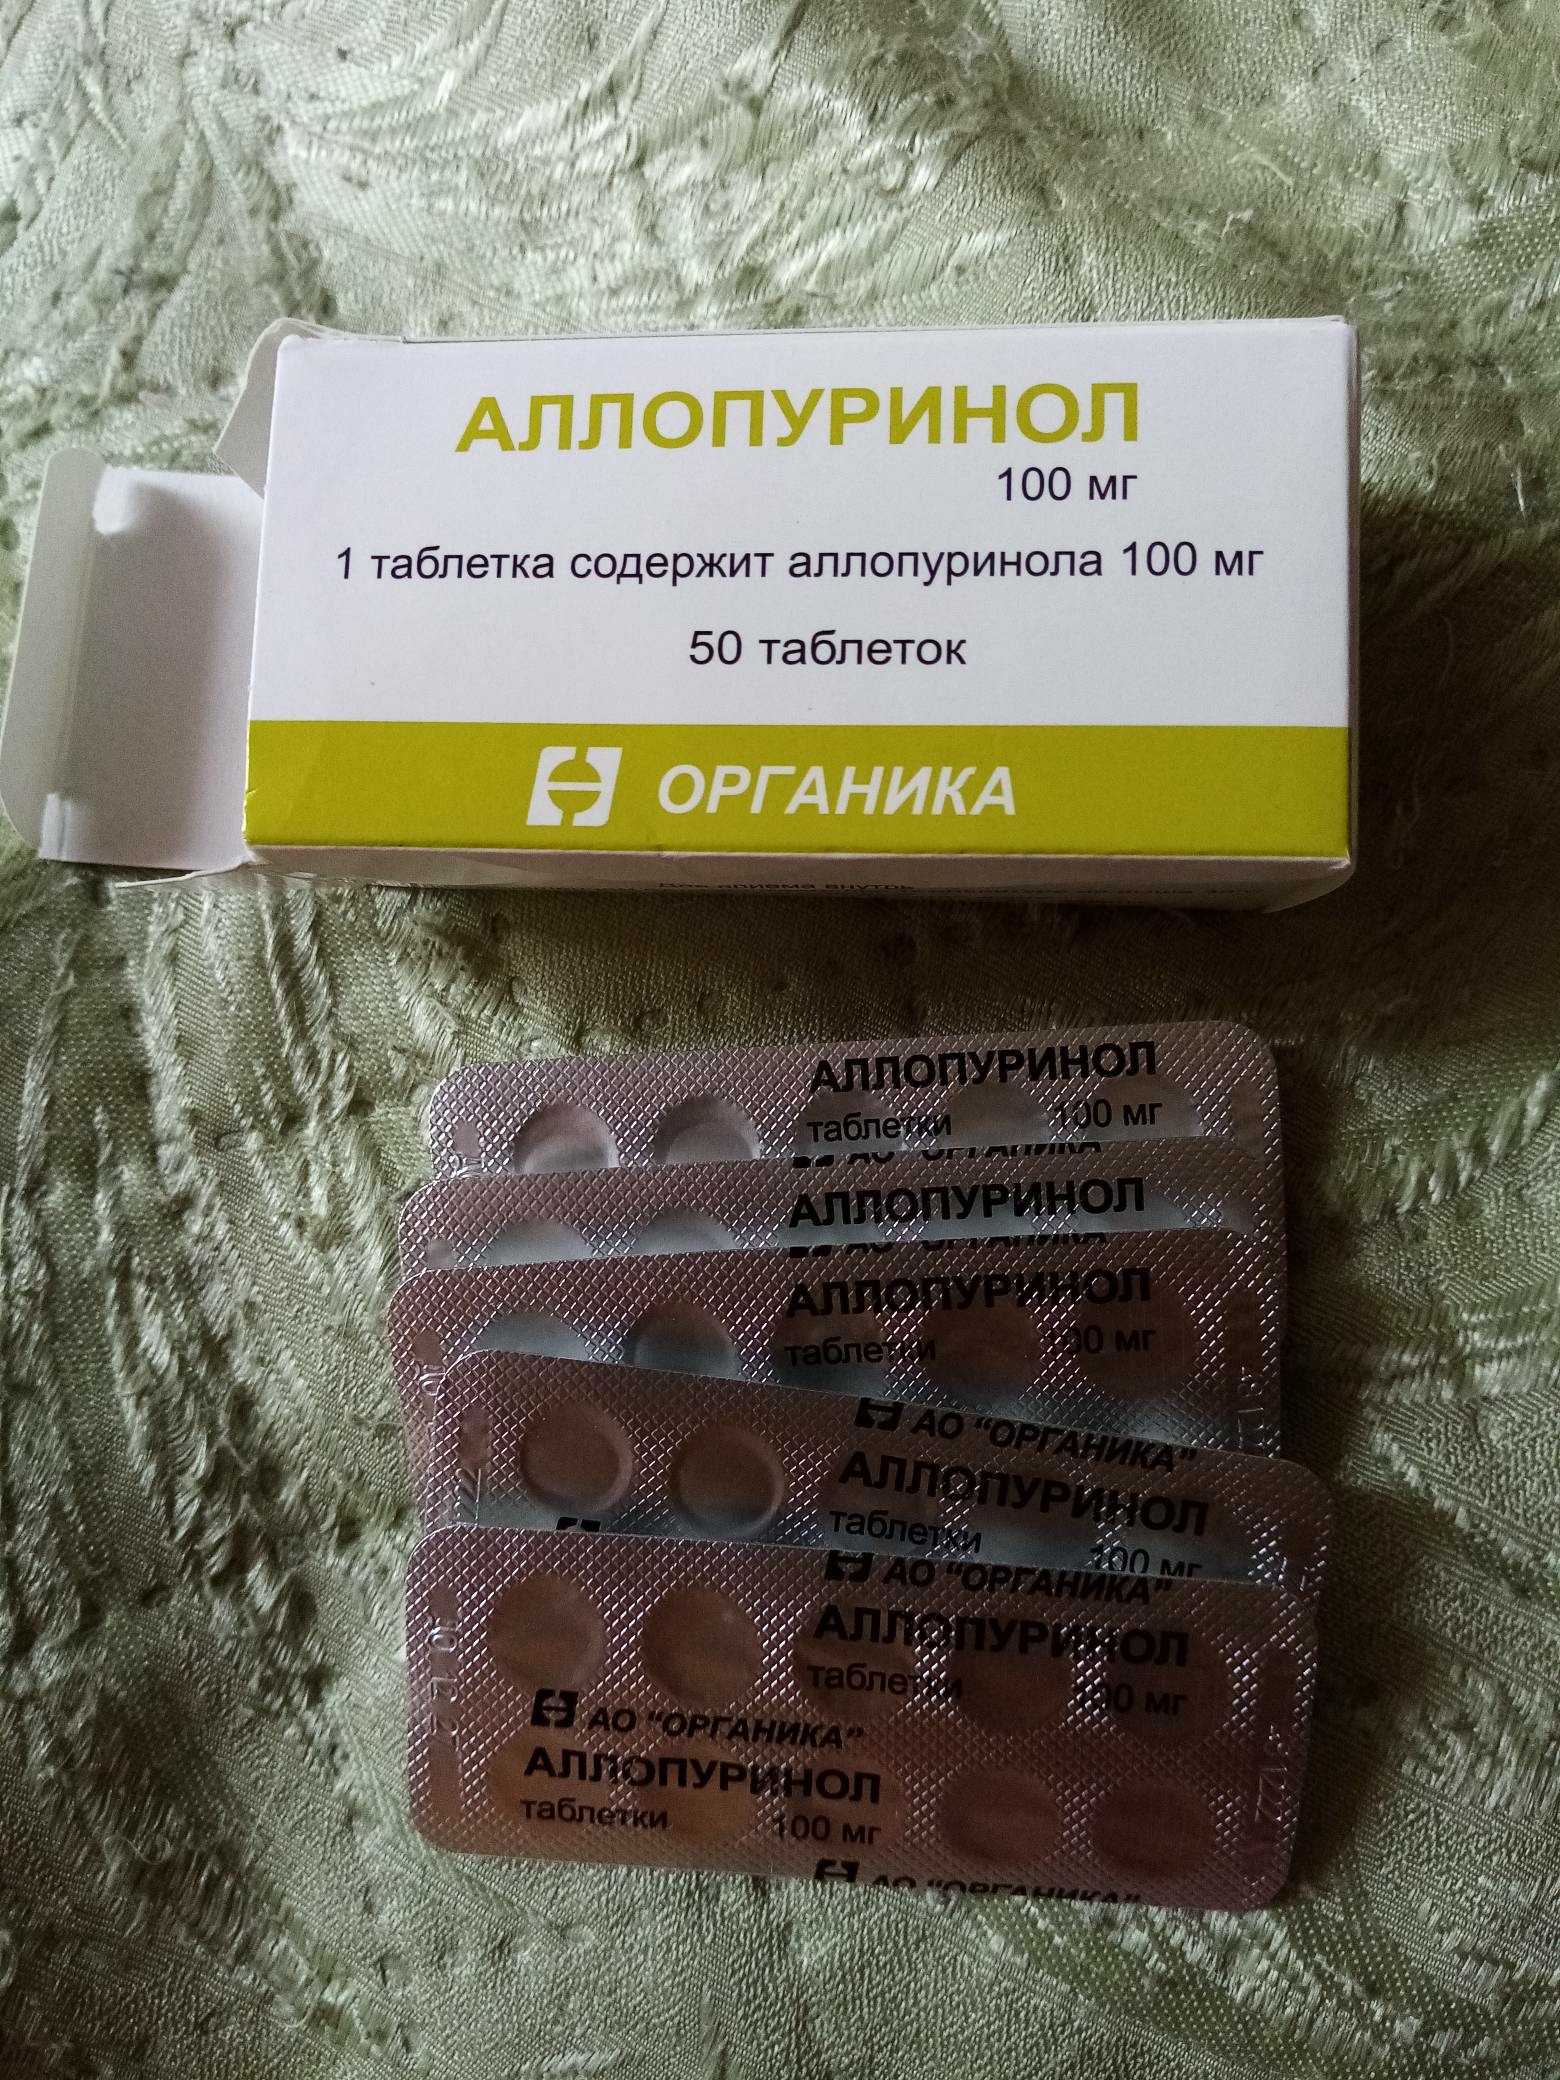 Аллопуринол 100 отзывы аналоги таблетки